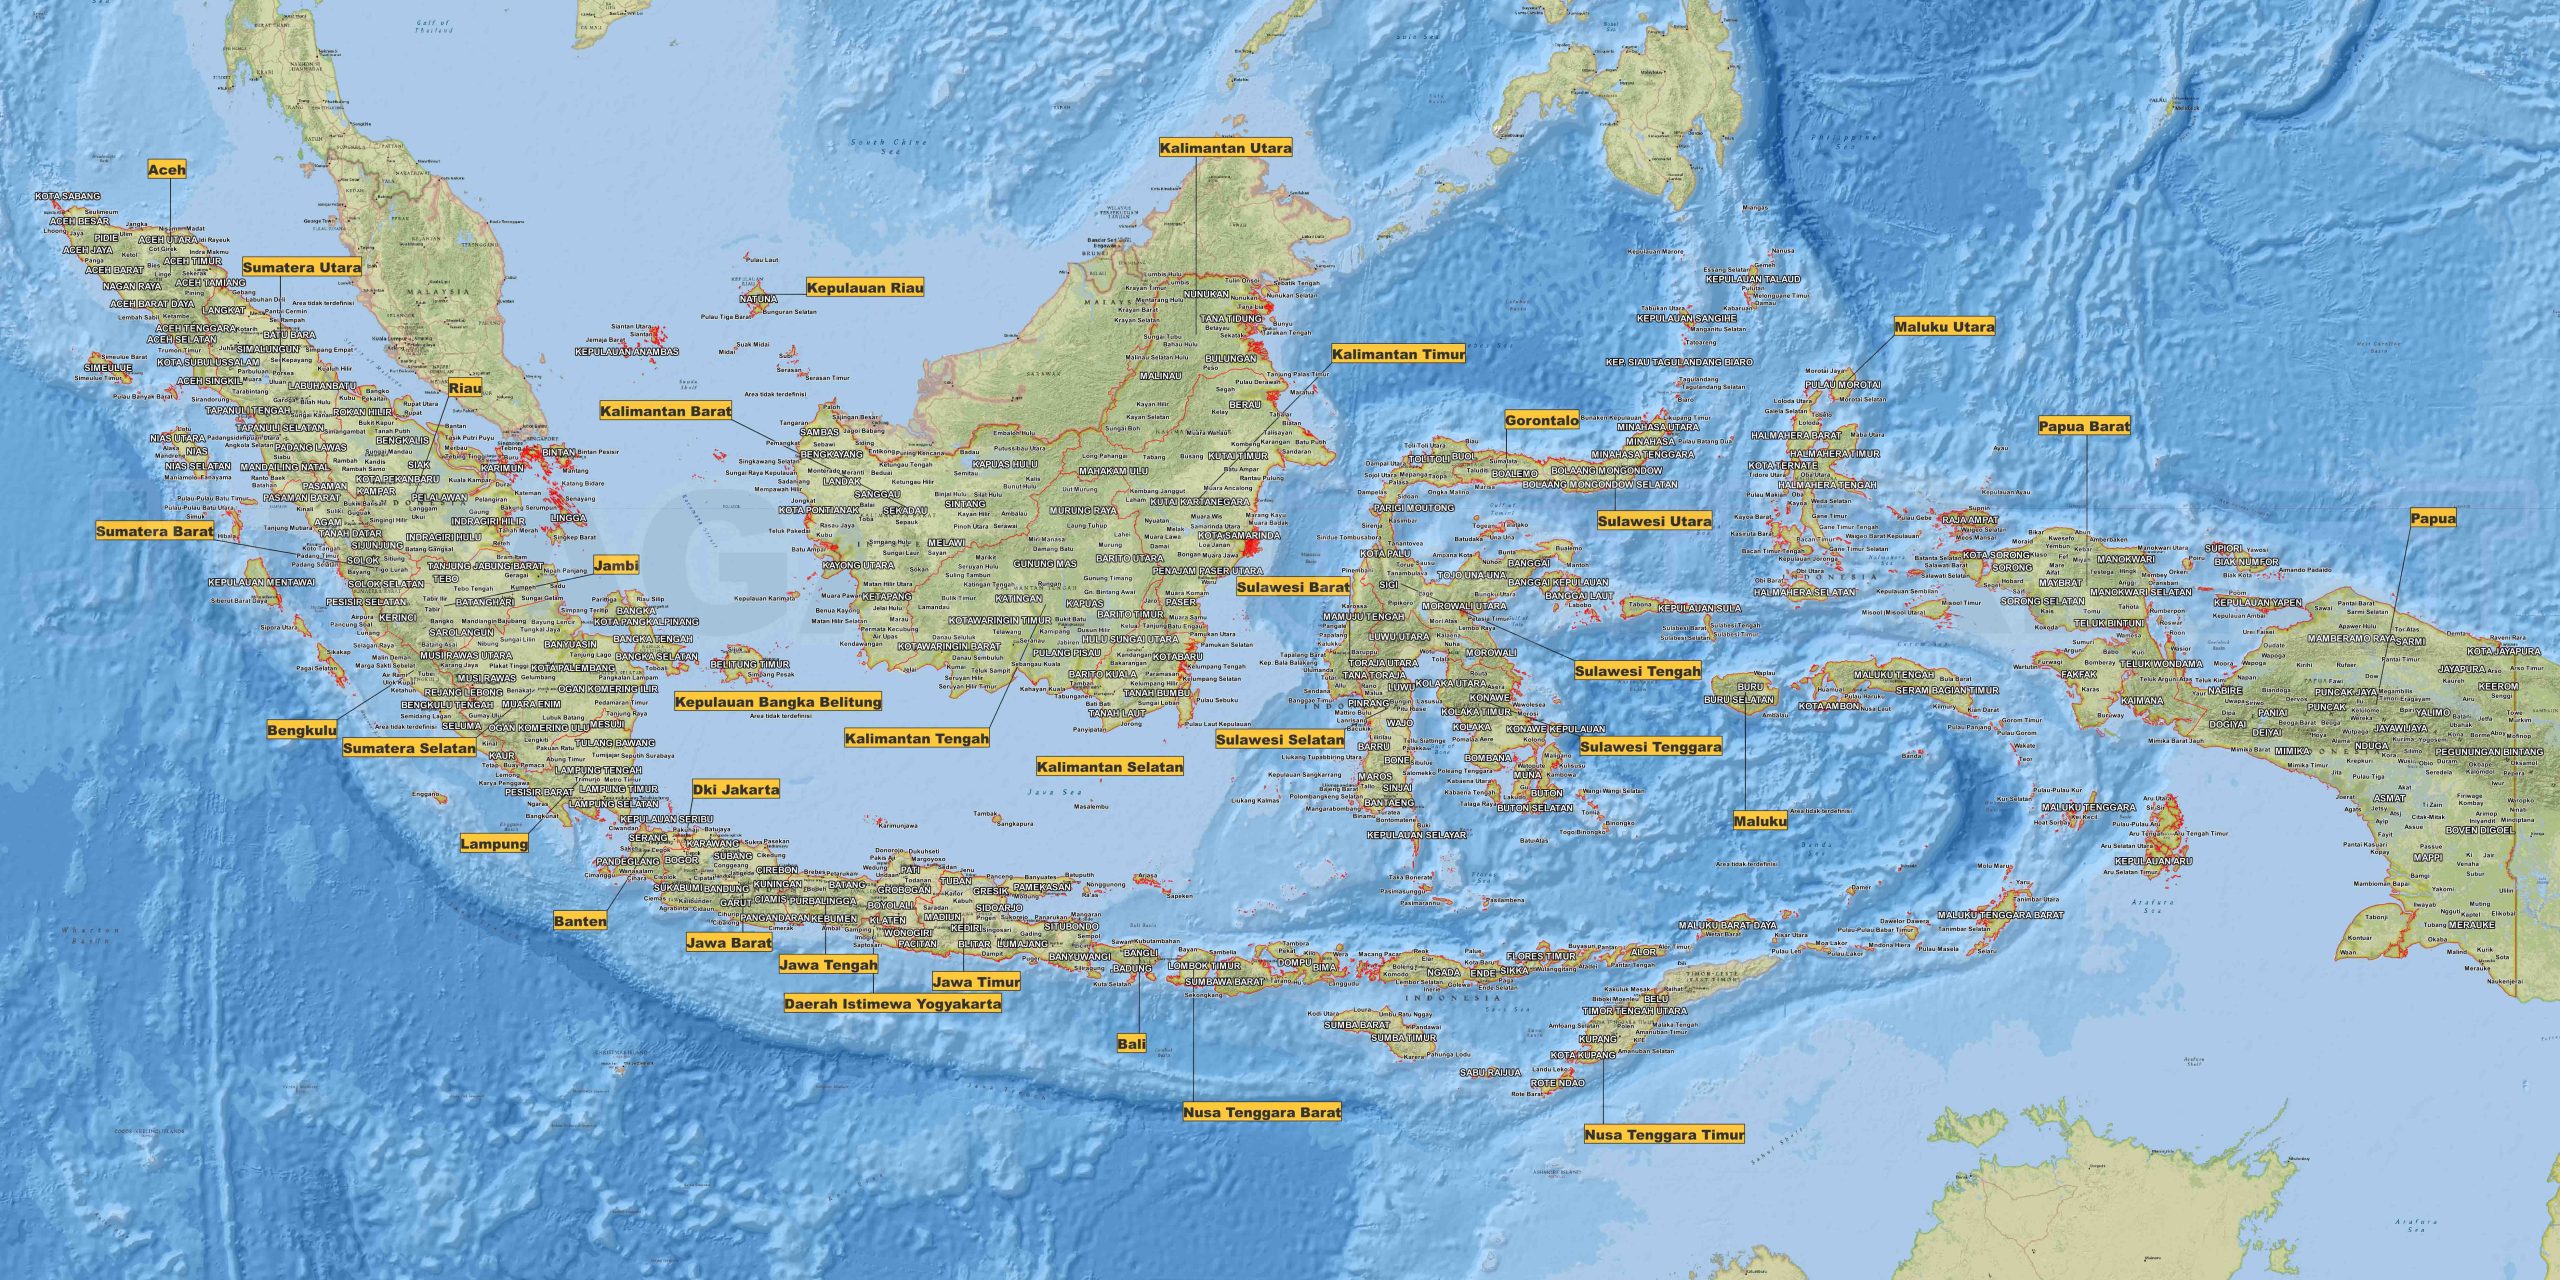 Langkah-langkah Cara Menggambar Peta Indonesia: Panduan Praktis